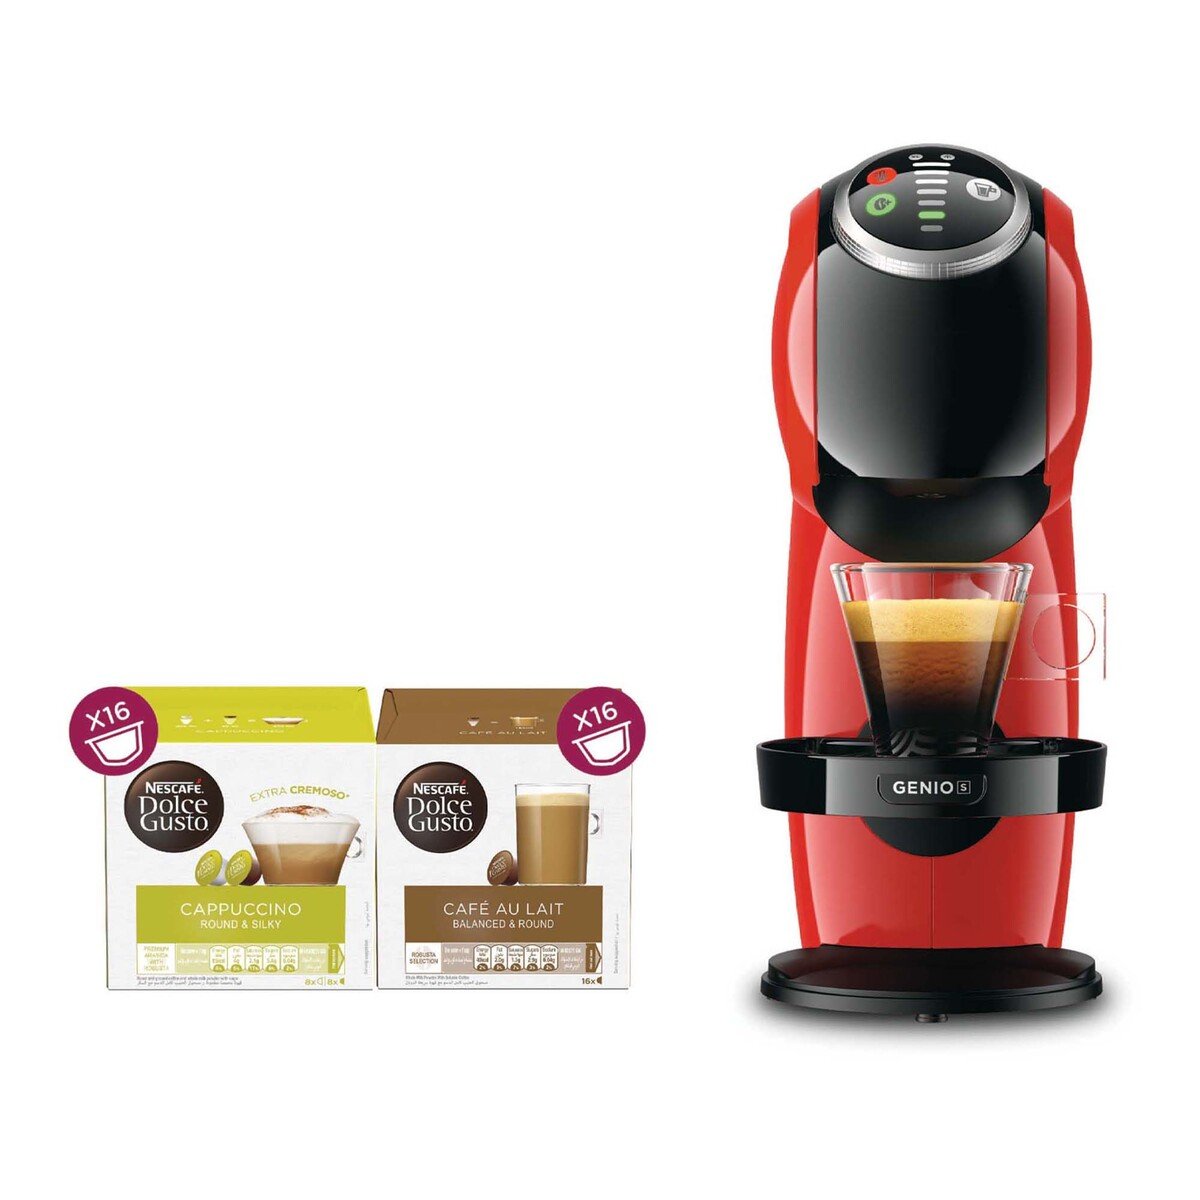 Nescafe Dolce Gusto Genio S Plus EDG315R + Capsule Coffee Maker 1500W 0.8LTR